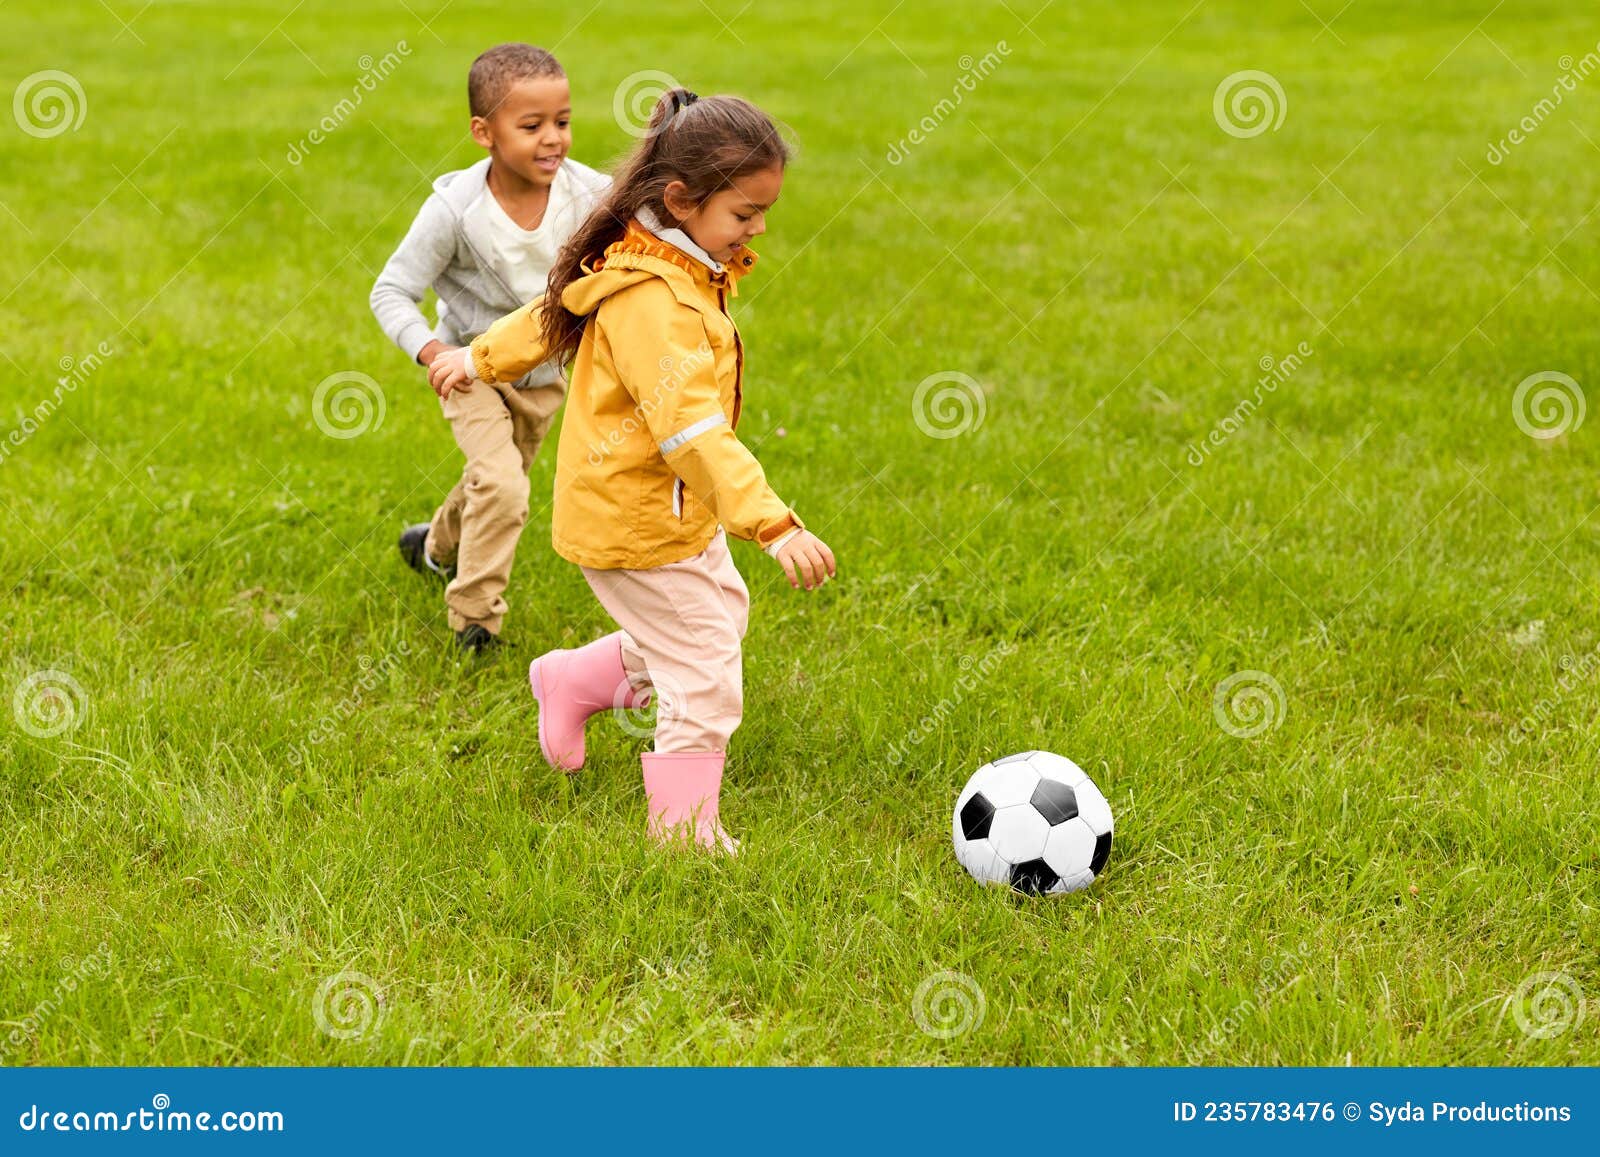 Brincadeiras com bola para crianças